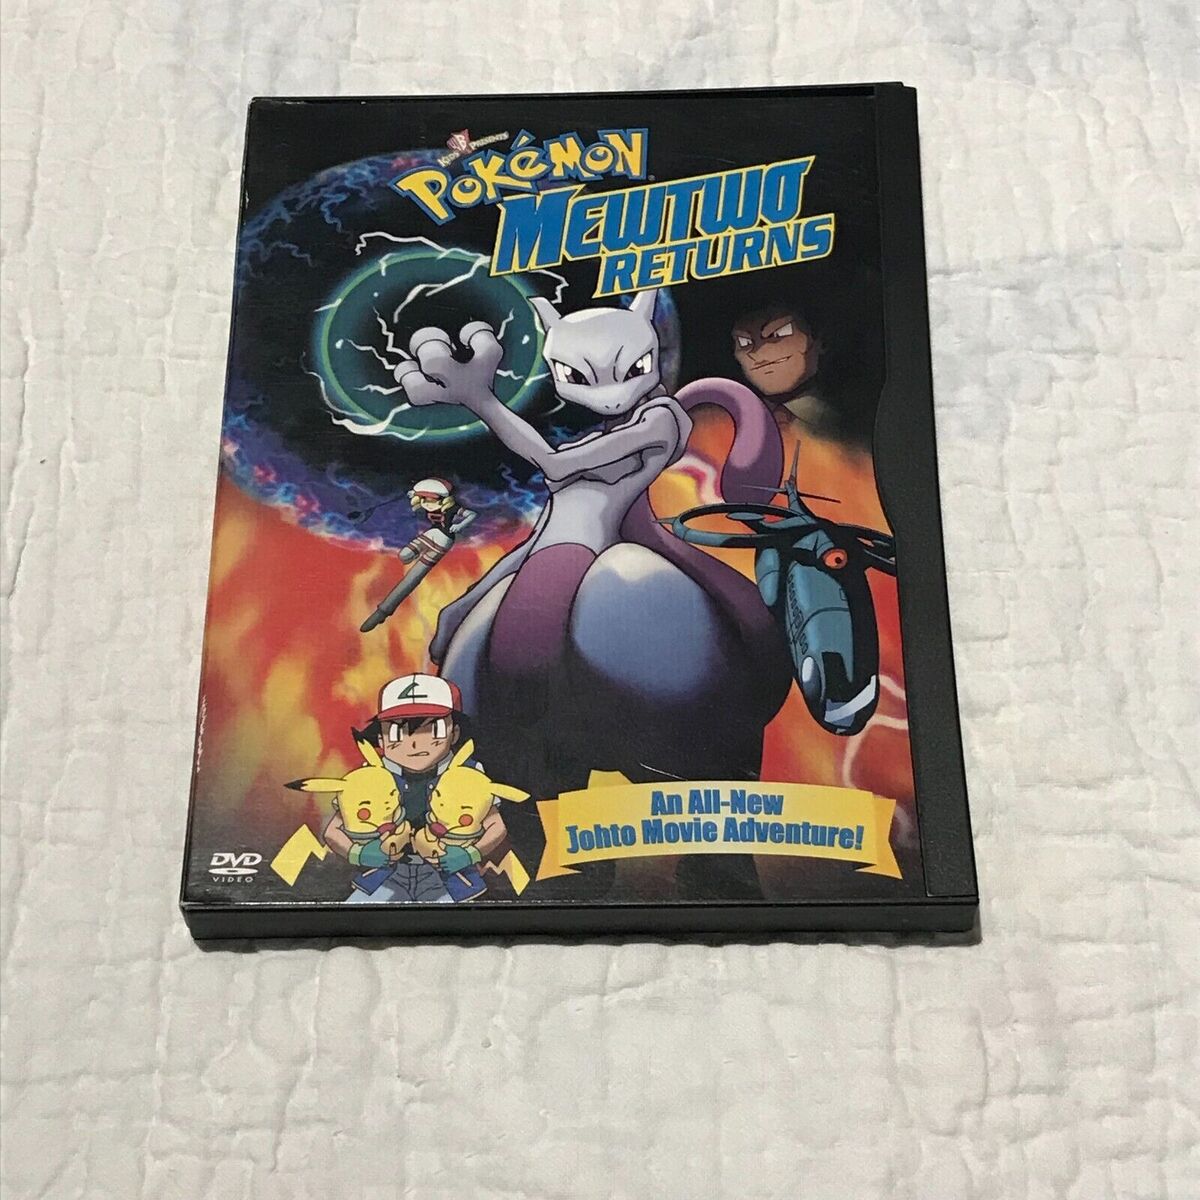 Pokémon - Mewtwo Contra-Ataca - Evolução - Capa DVD  Label DVD -   - Crianção e tradução de capas de Dvd's e Blu-ray's  para colecionadores